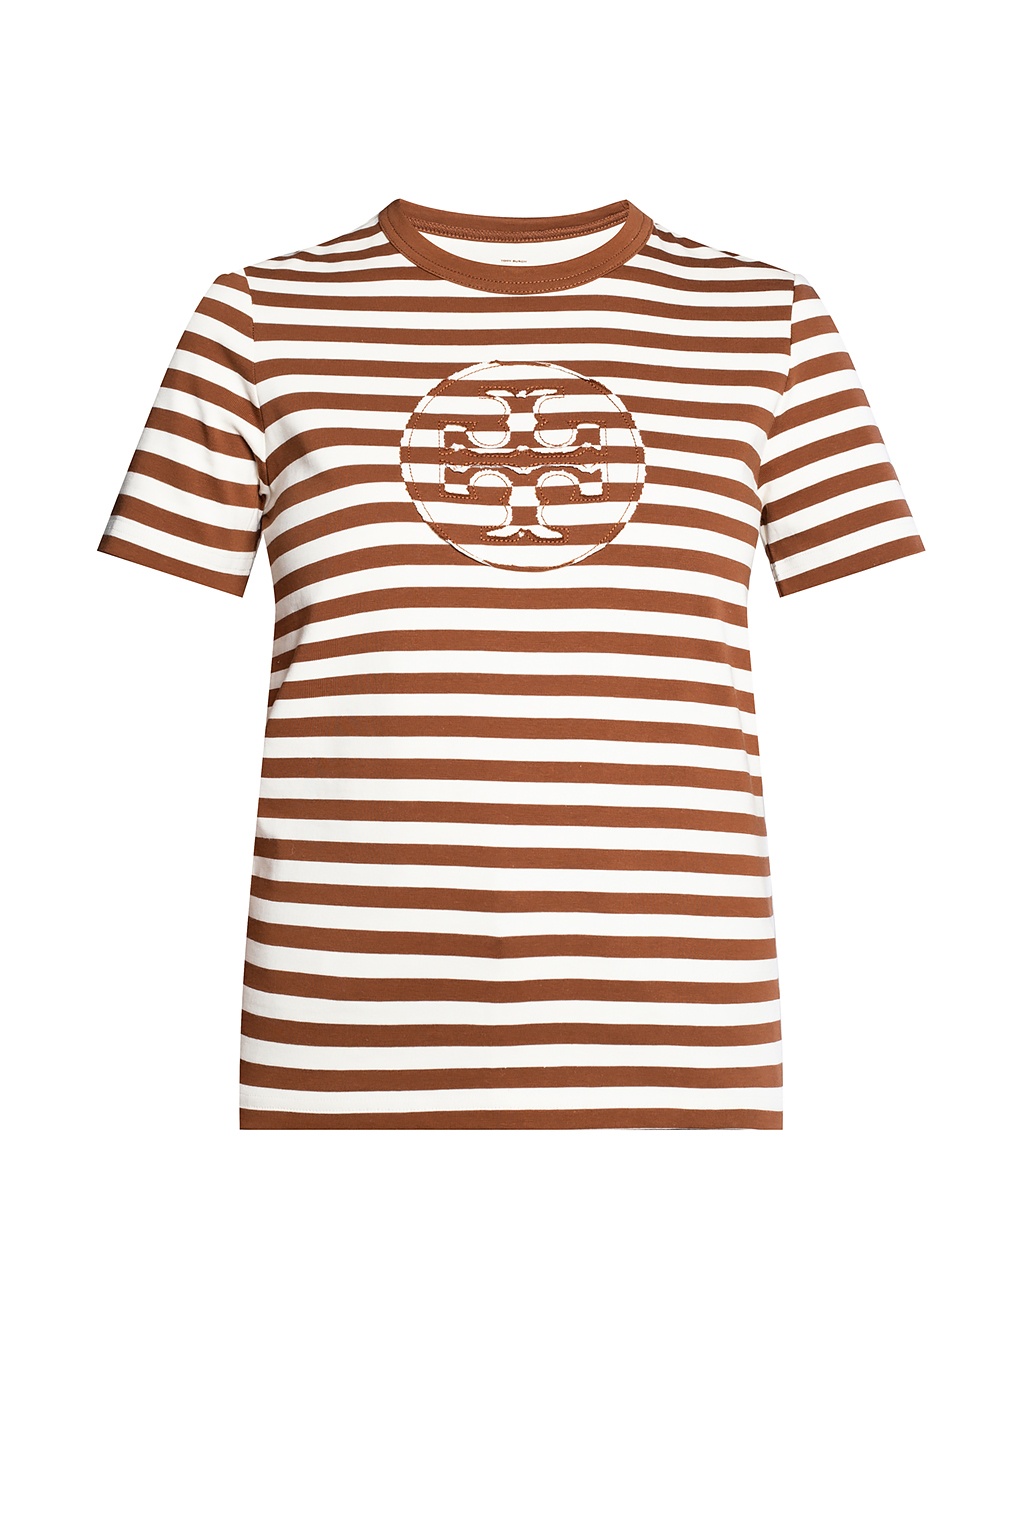 Tory Burch T-shirt with logo | Women's Clothing | Vitkac